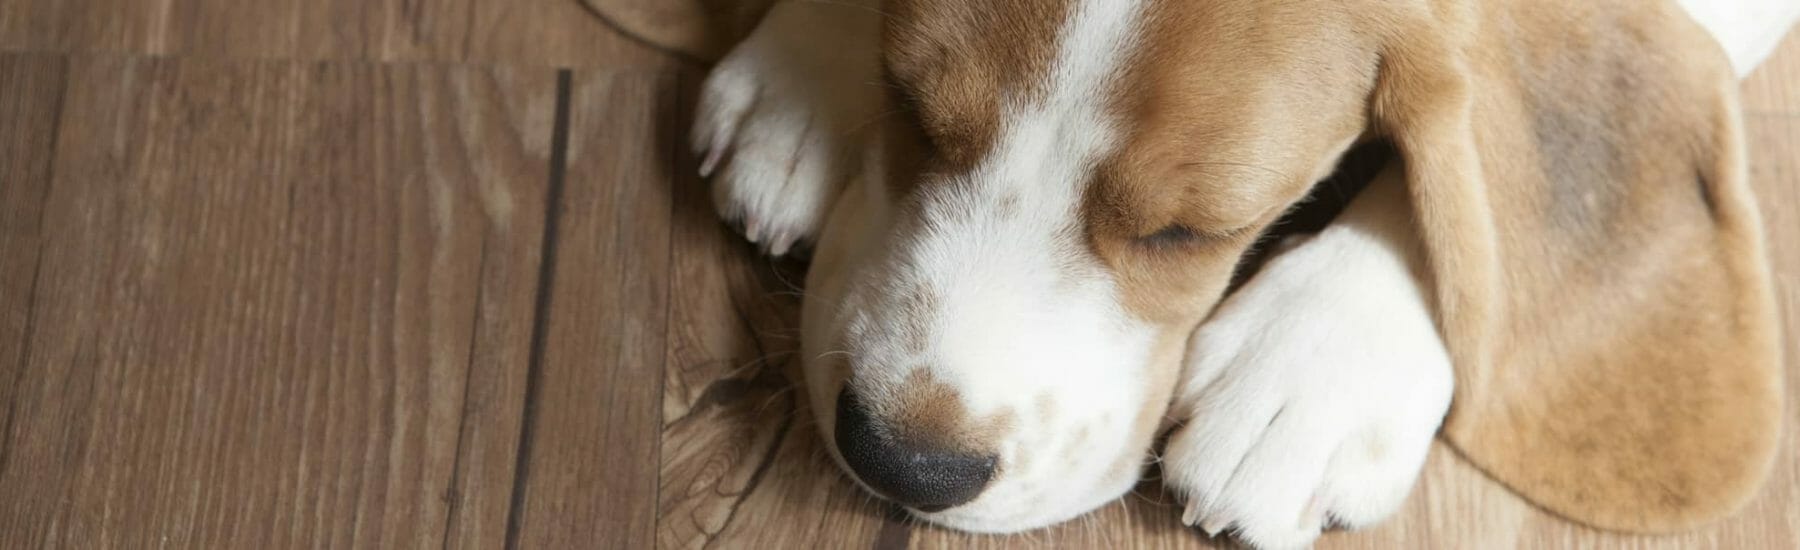 Dog sleeping on wooden floor